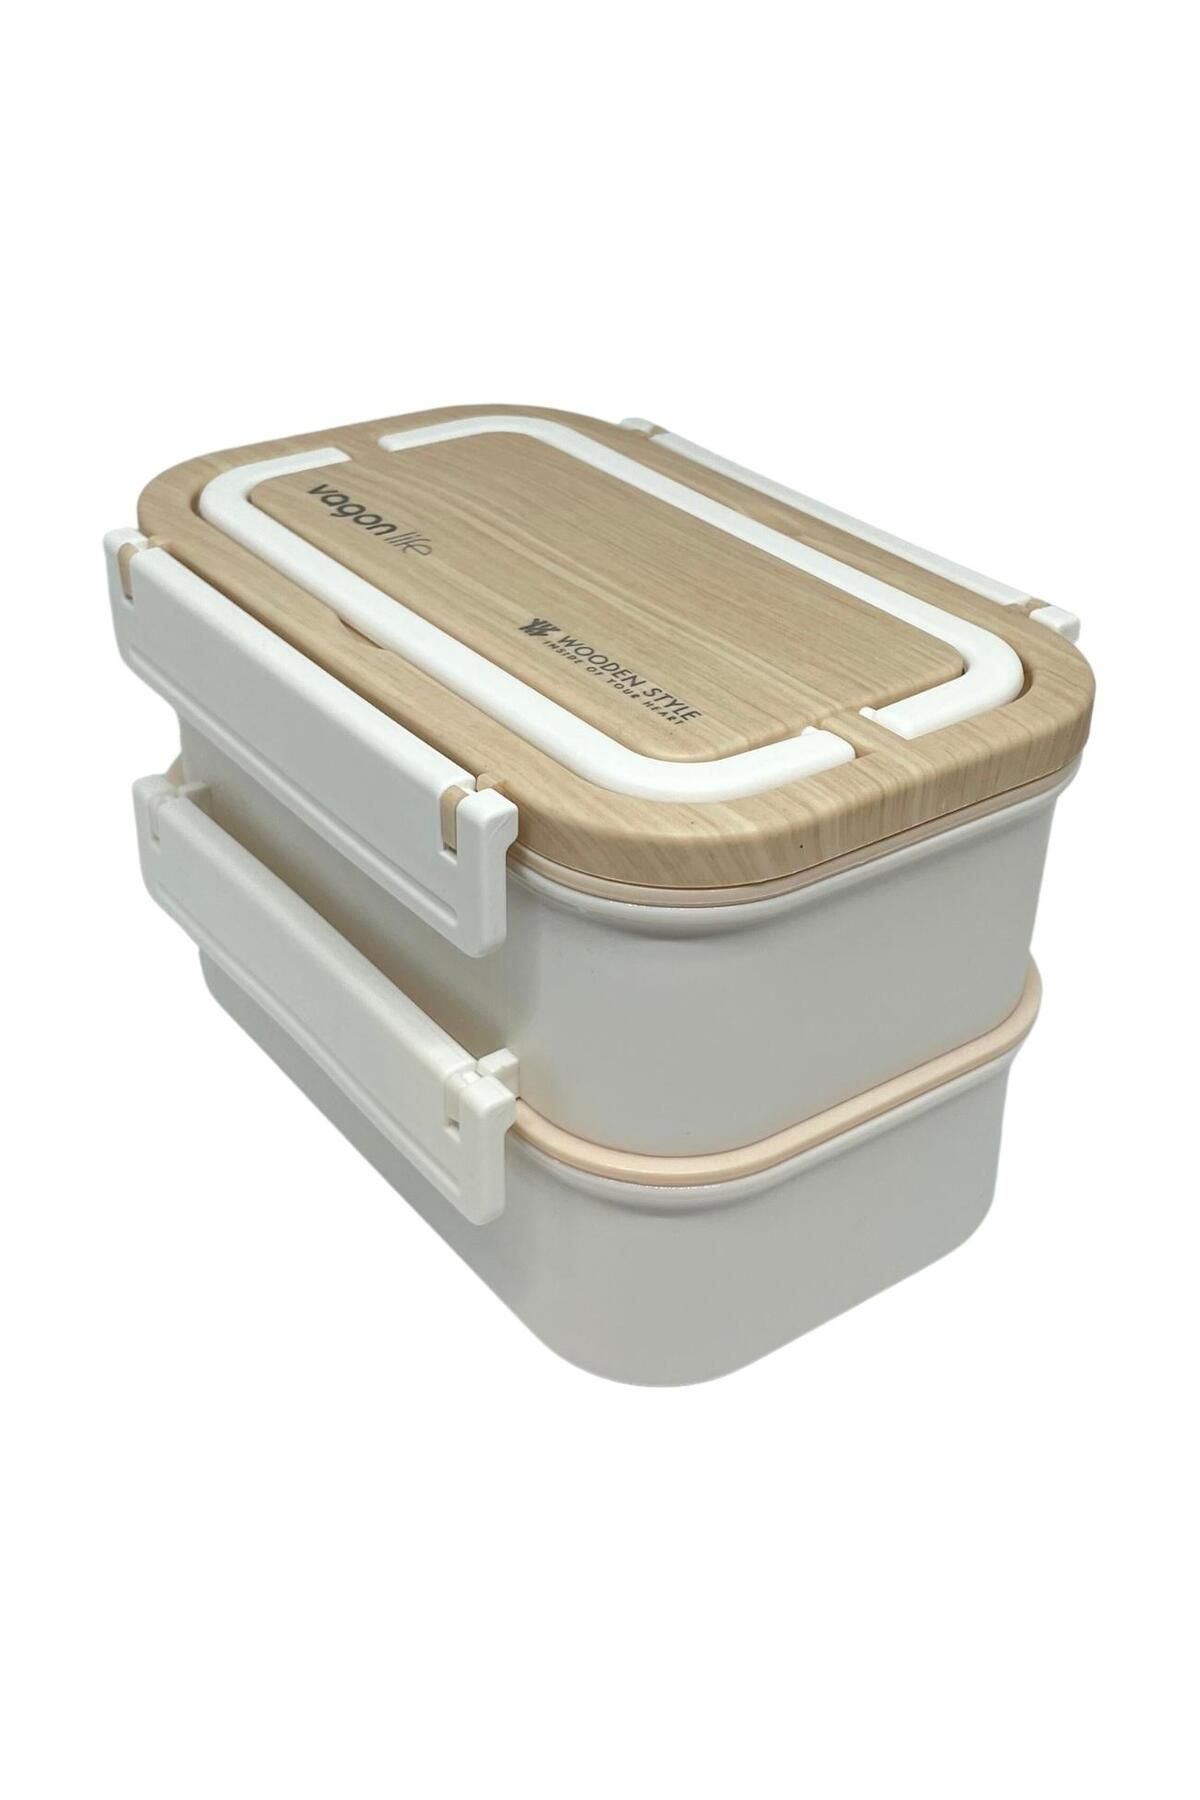 Vagonlife Bento 1600ml Lunchbox Yeni Koleksiyon İki Katlı Üç Bölmeli Çelik Sefer Tası Yemek Kutusu